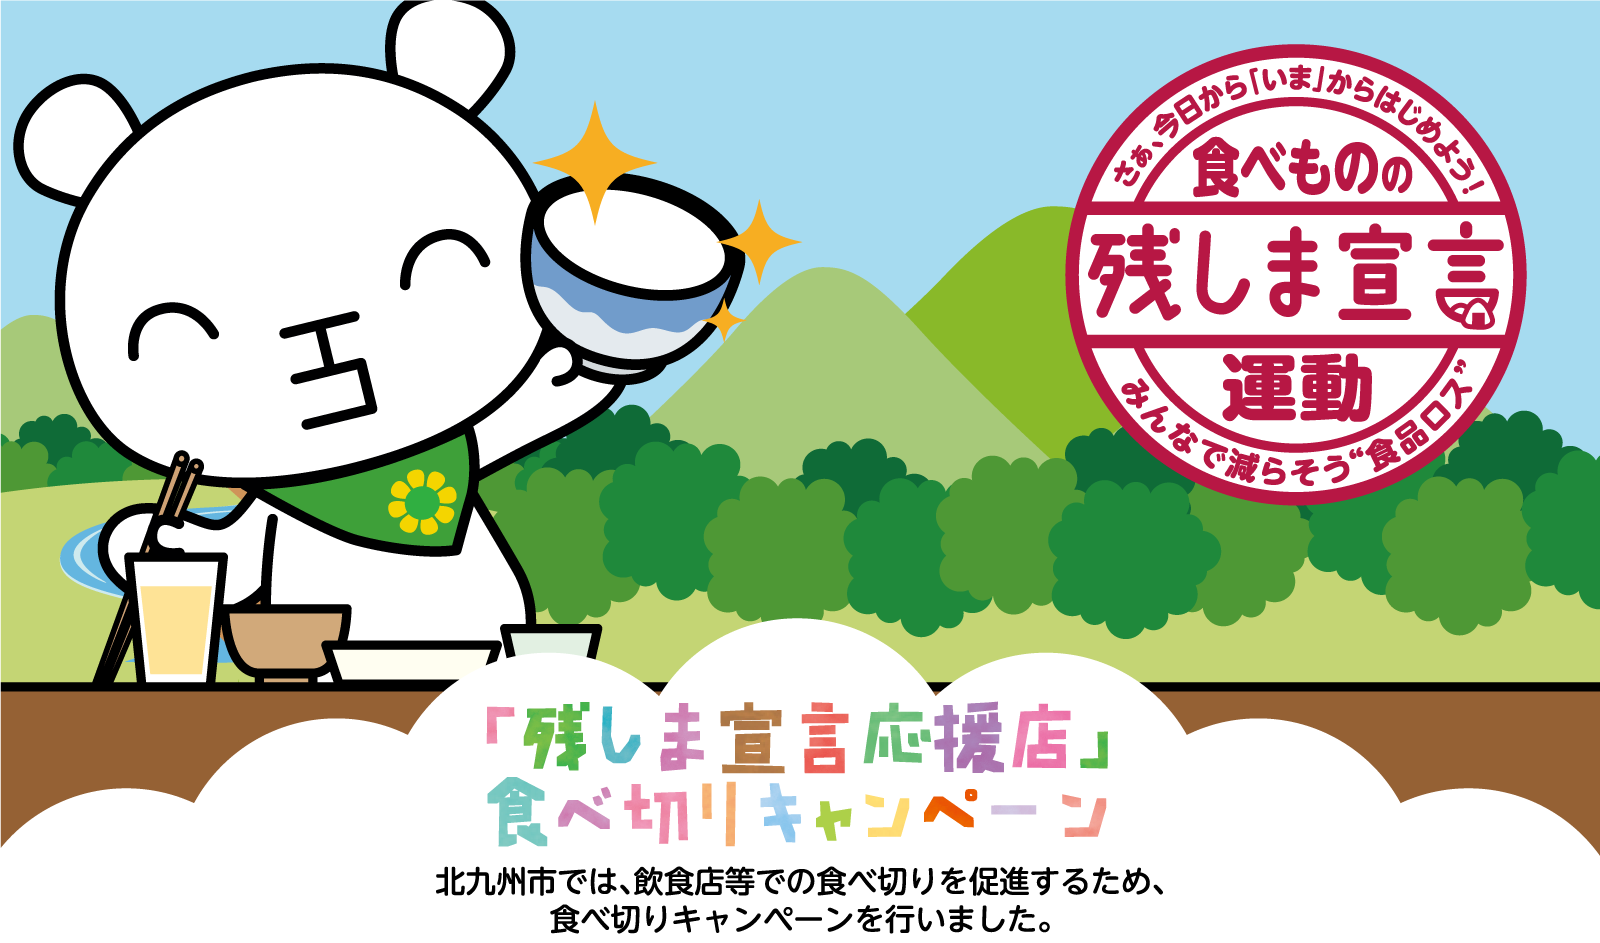 「残しま宣言応援店」食べ切りキャンペーン。北九州市では、飲食店等での食べ切りを促進するため、食べ切りキャンペーンを行いました。